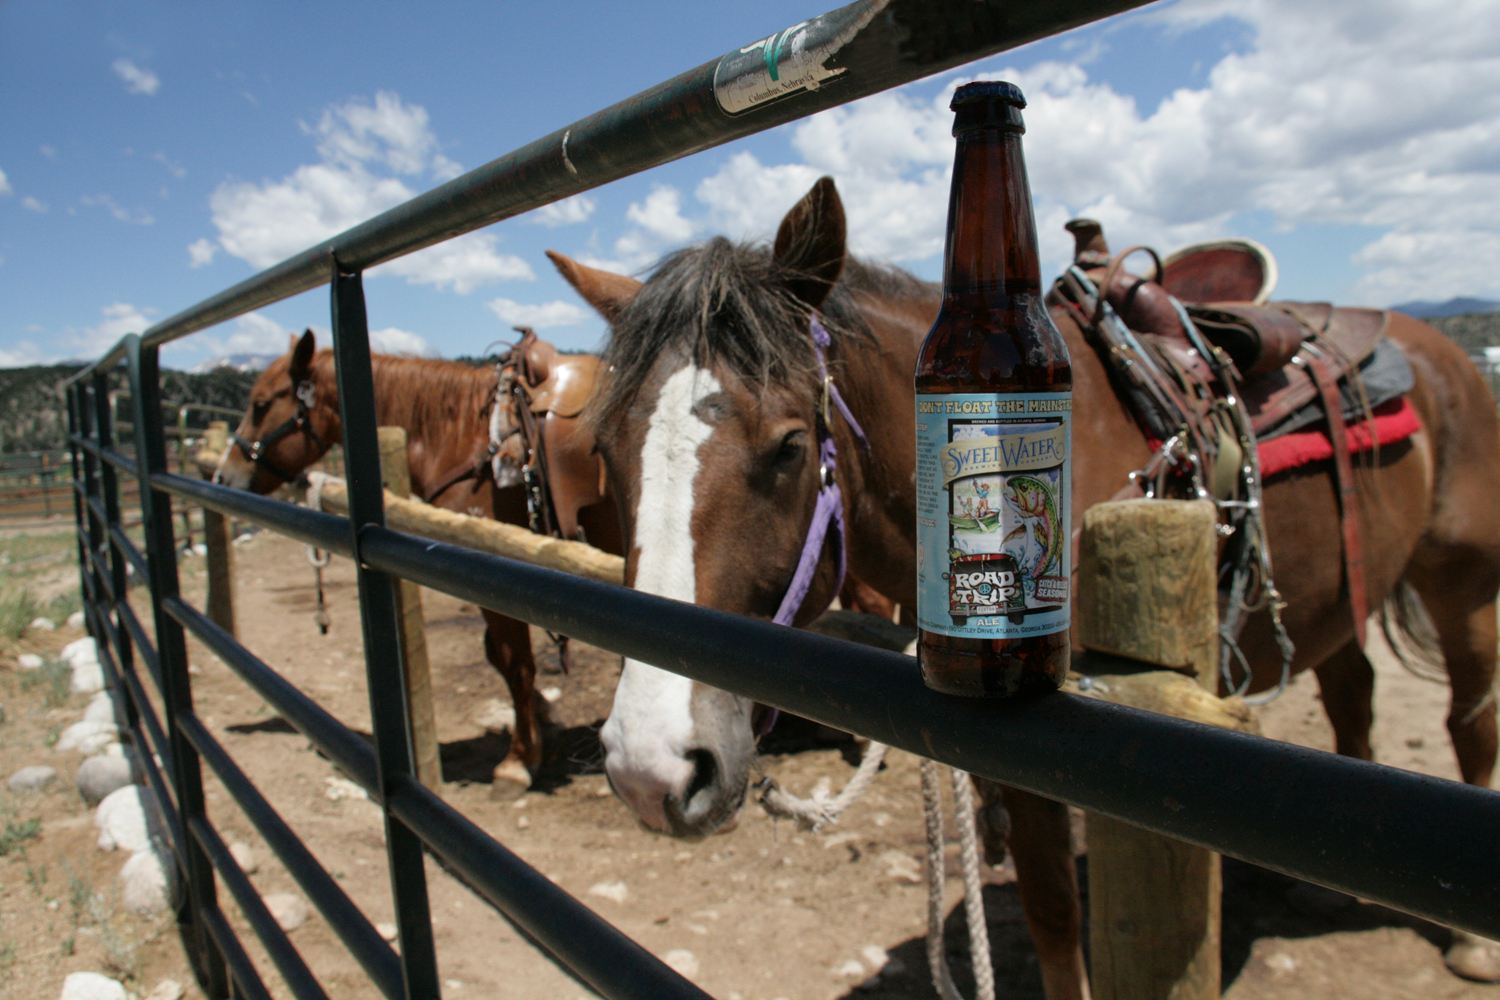 Summer Road Trip beer is a great craft seasonal ale.